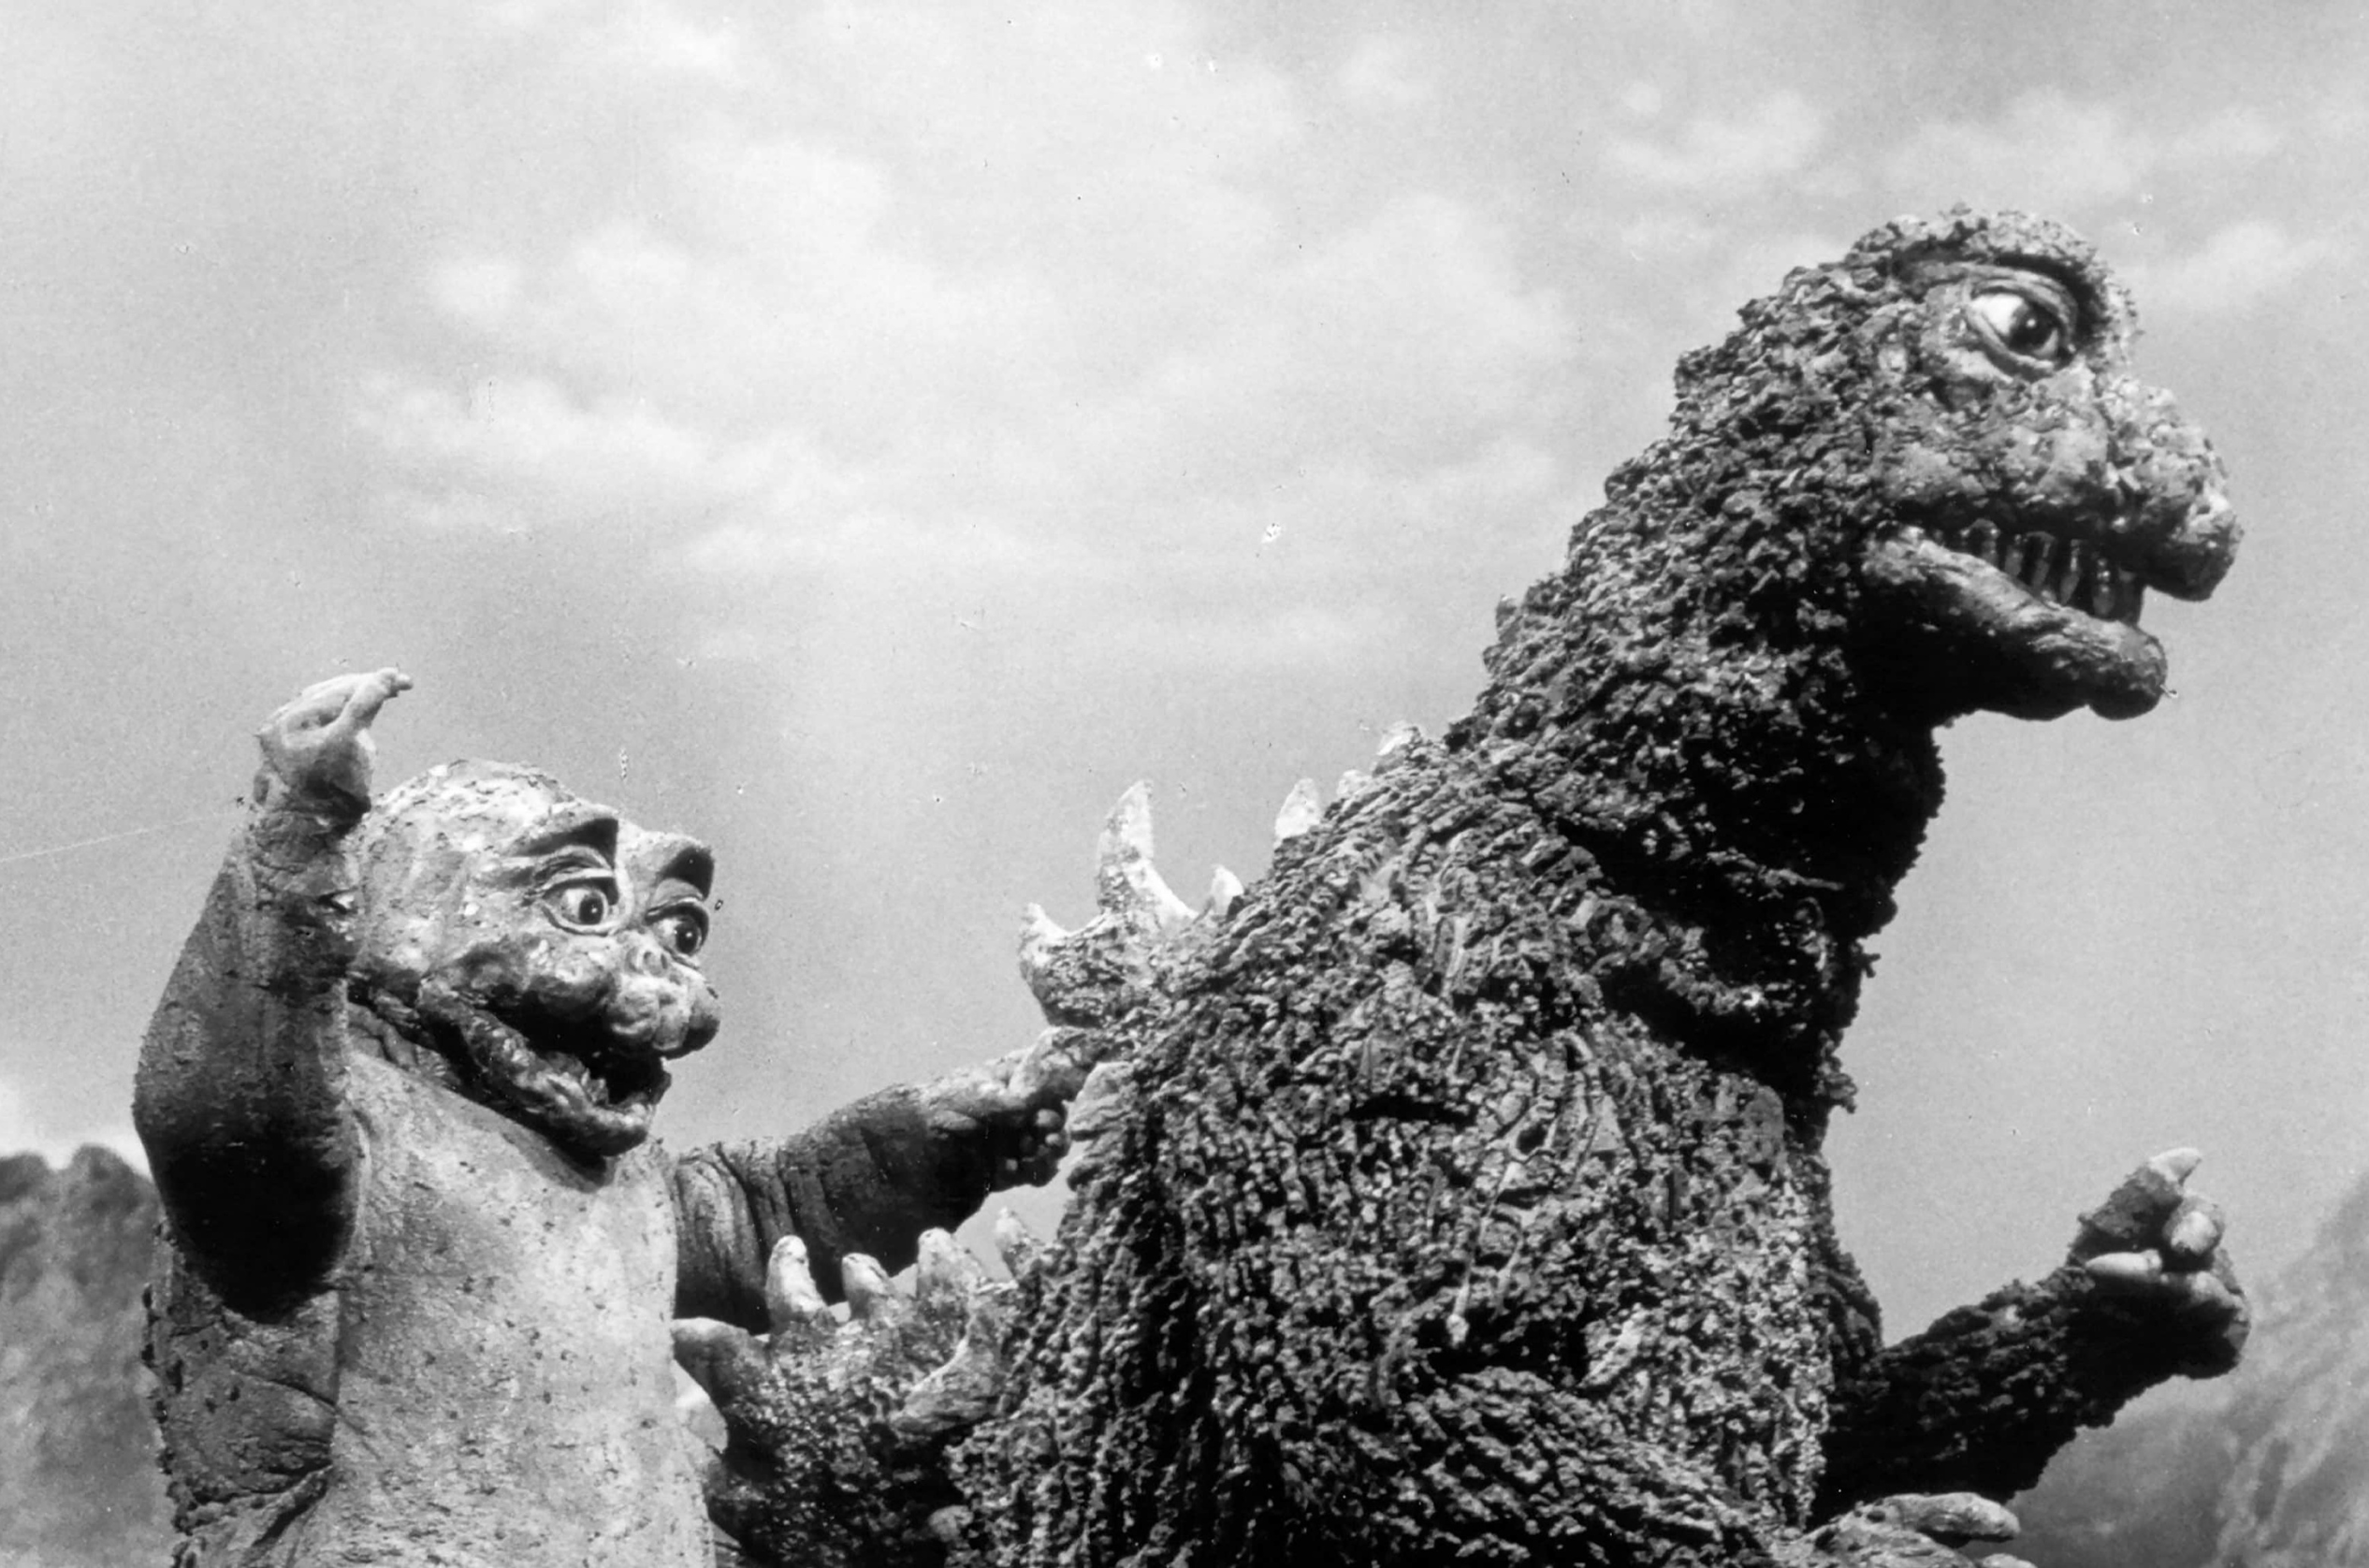 Son of Godzilla (1967) still